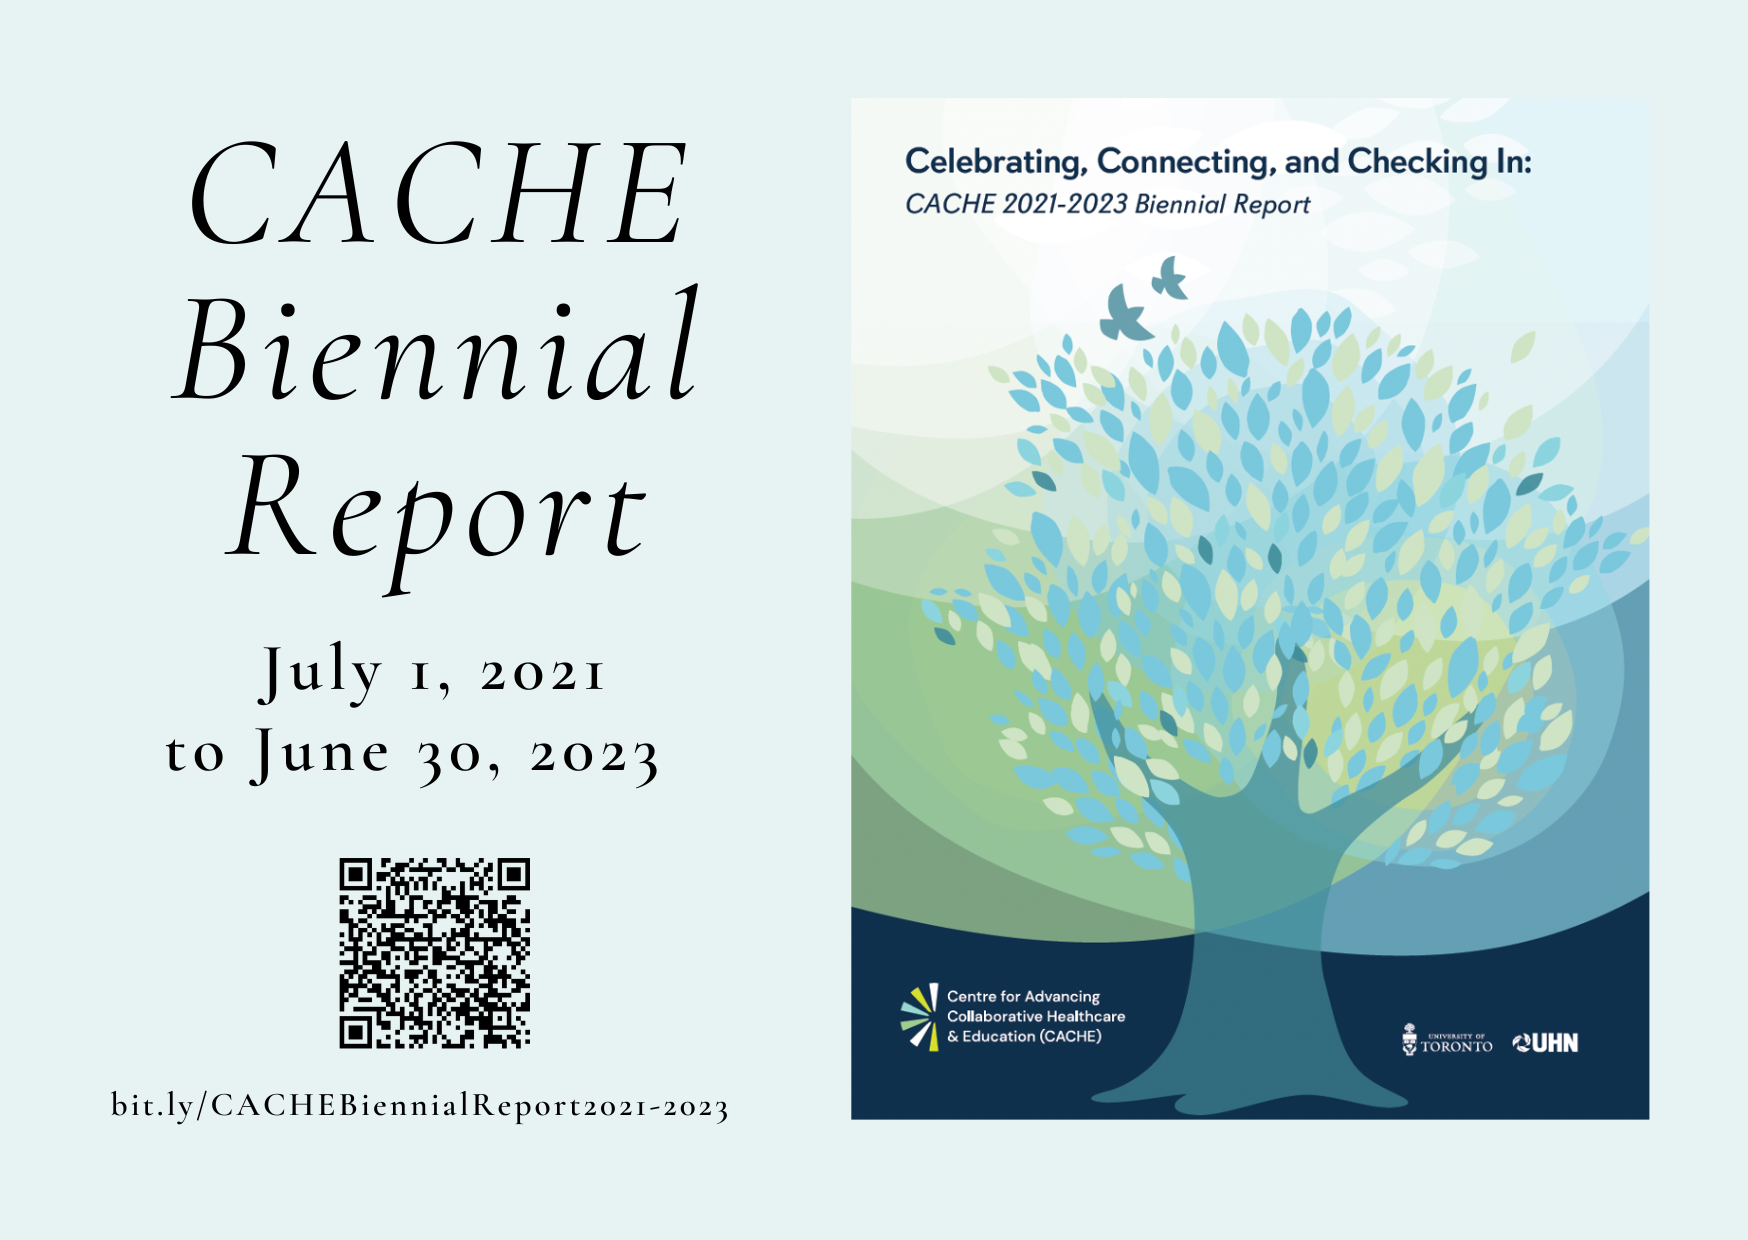 CACHE 2021-2023 Biennial Report postcard